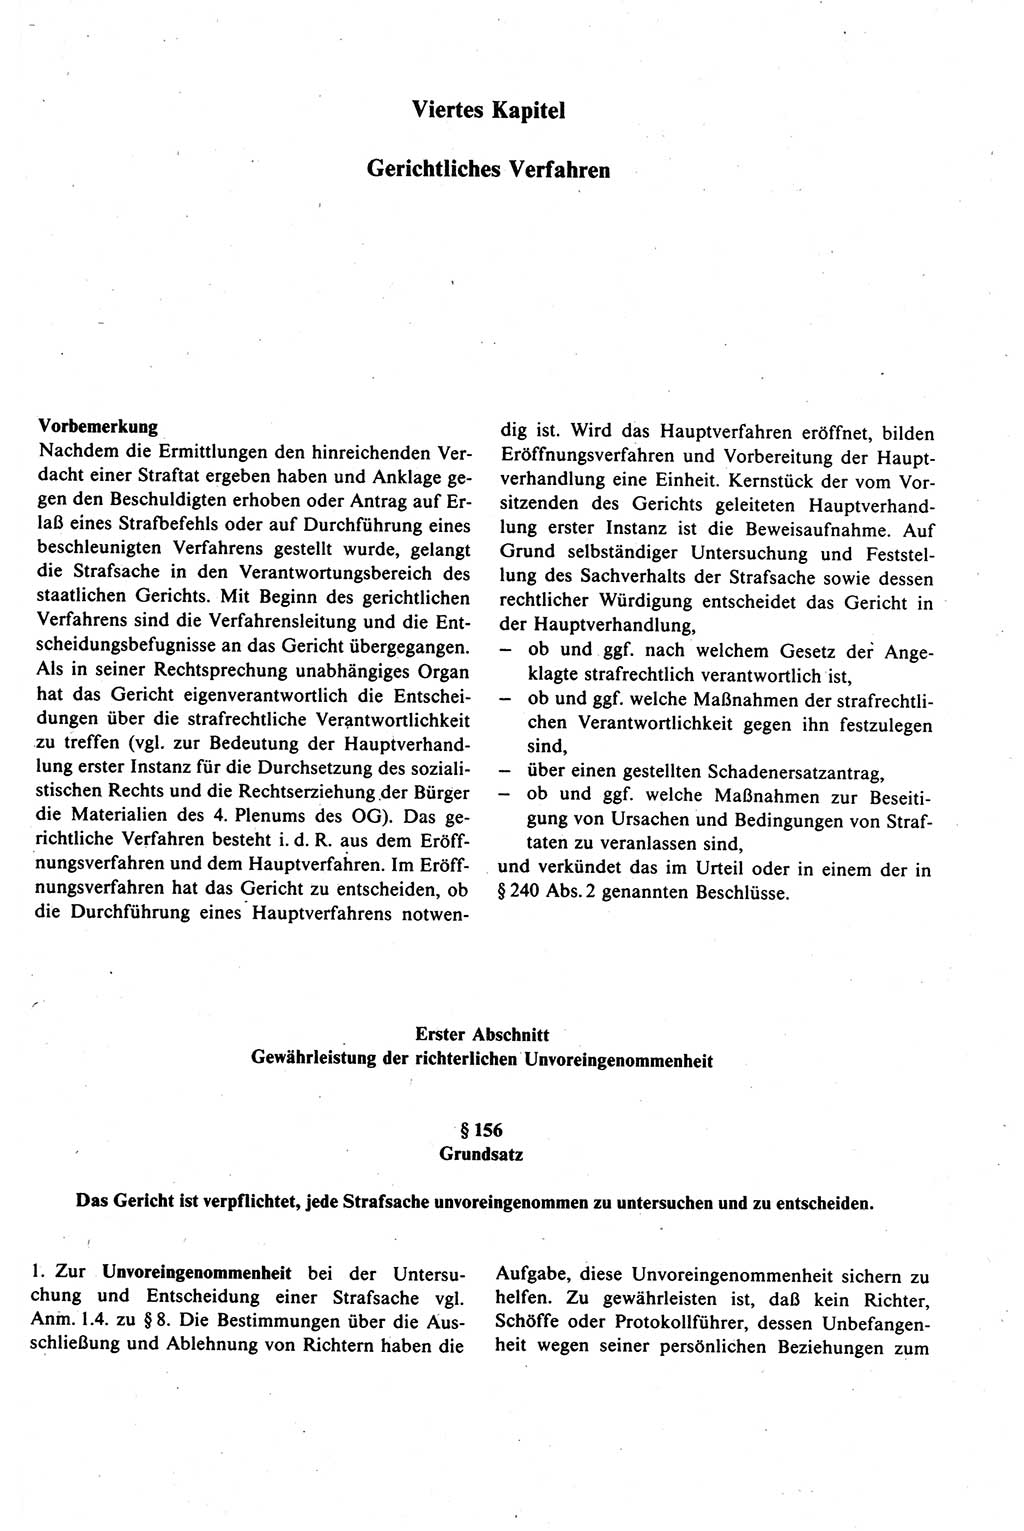 Strafprozeßrecht der DDR (Deutsche Demokratische Republik), Kommentar zur Strafprozeßordnung (StPO) 1989, Seite 203 (Strafprozeßr. DDR Komm. StPO 1989, S. 203)